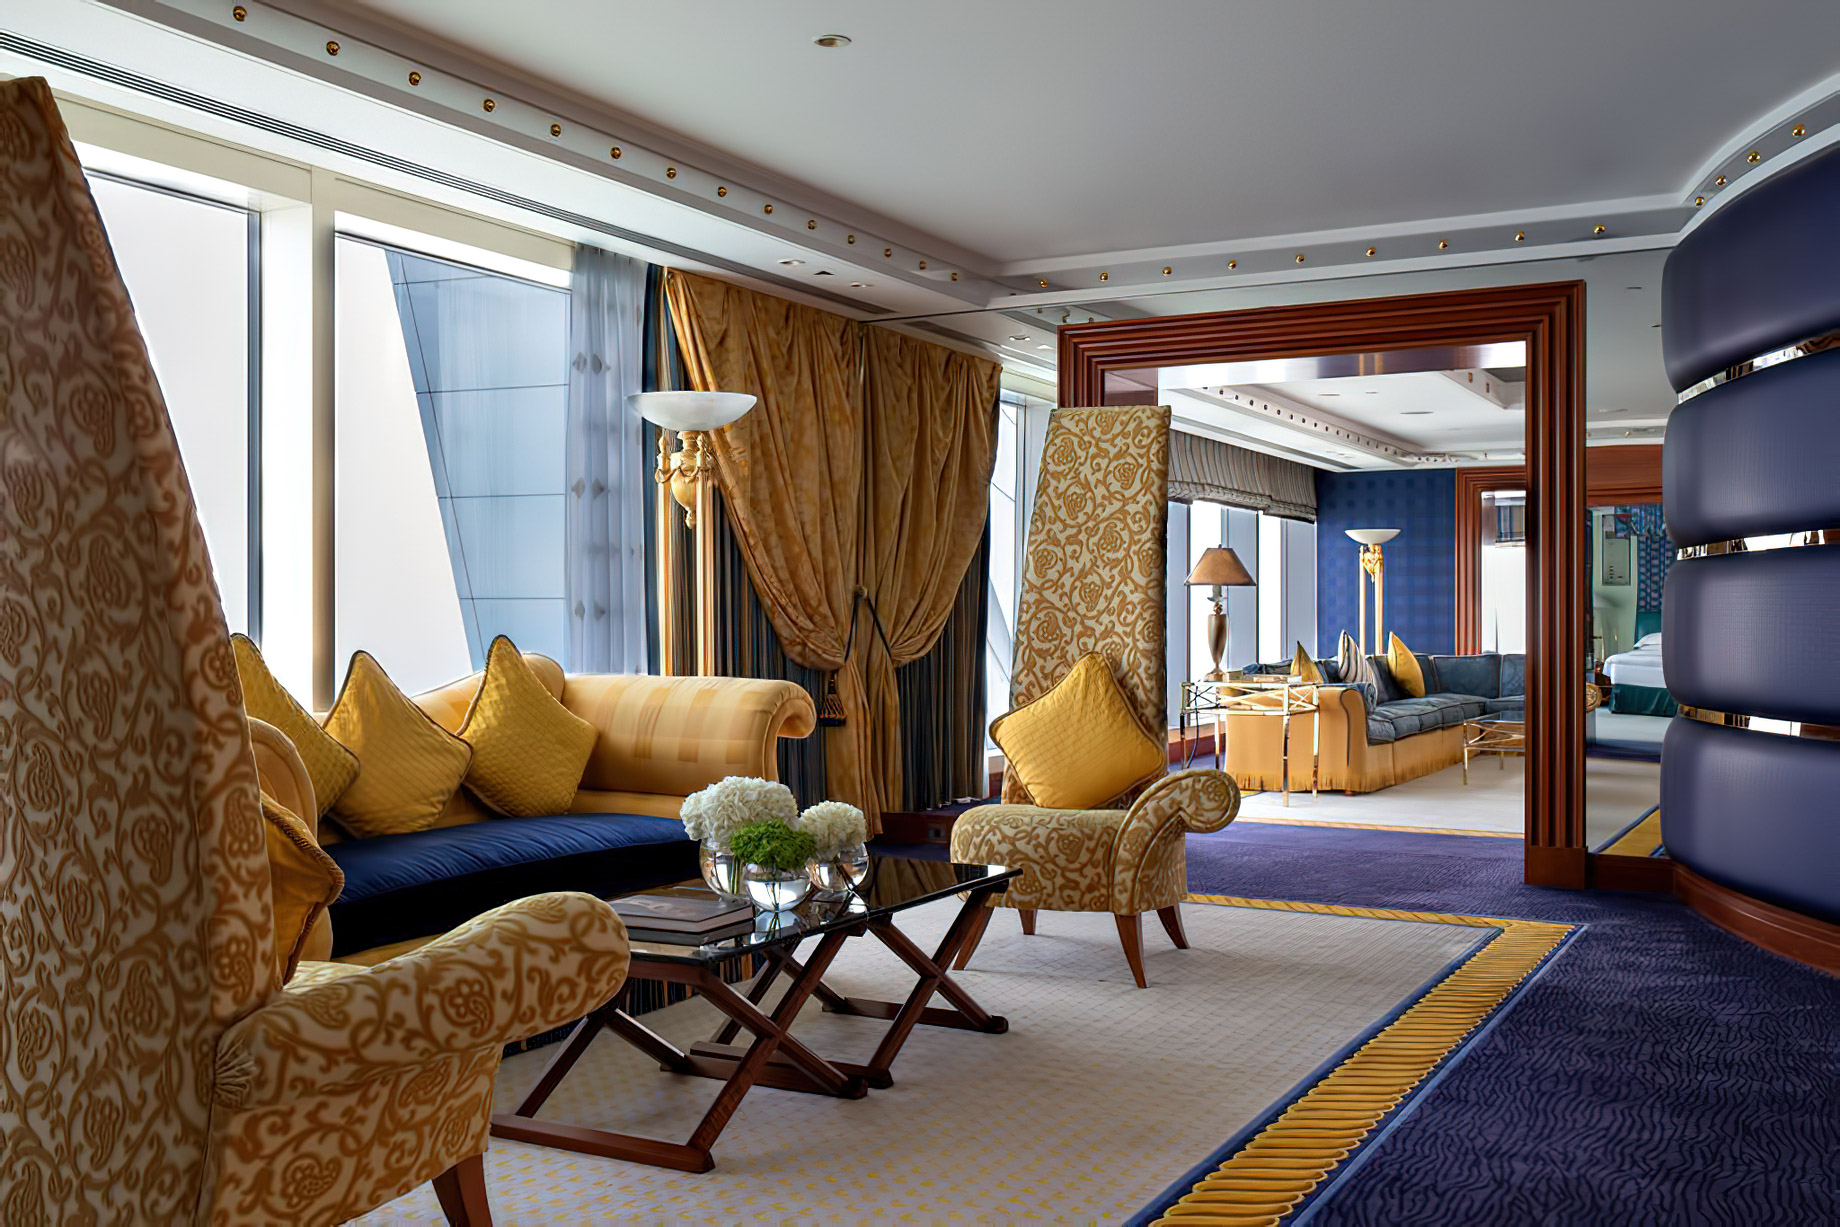 Burj Al Arab Jumeirah Hotel - Dubai, UAE - Diplomatic Suite